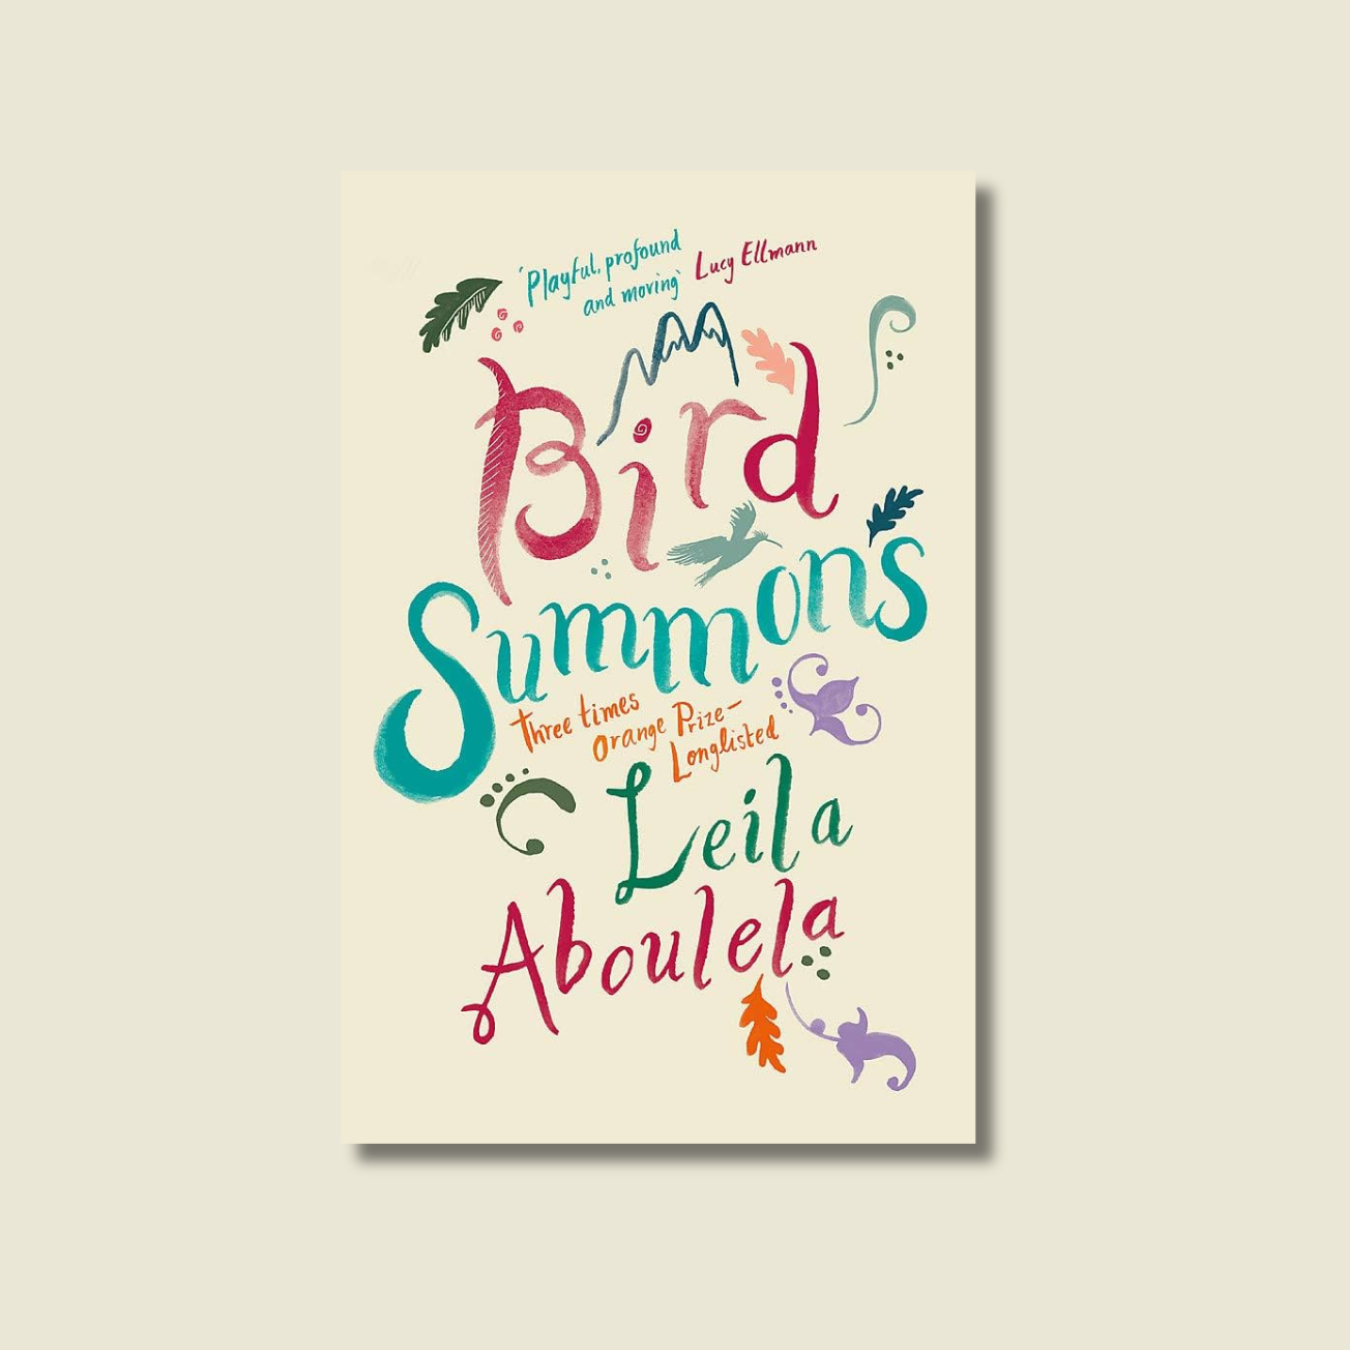 BIRD SUMMONS BY LEILA ABOULELA